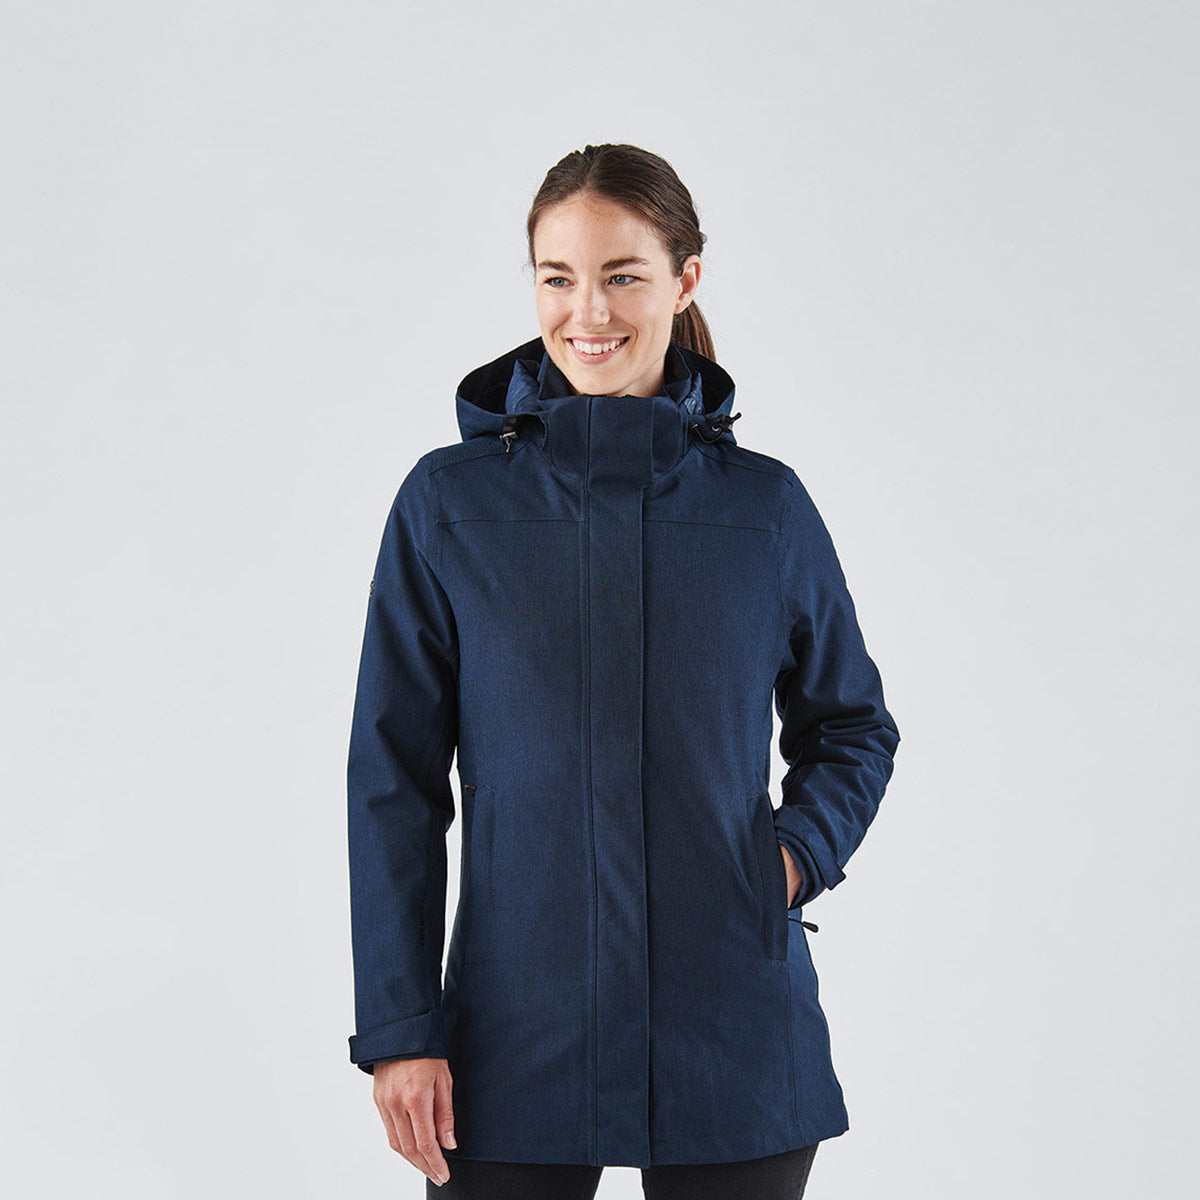 Avalanche Performance Wear Blue Women's Fleece Jacket, Size L